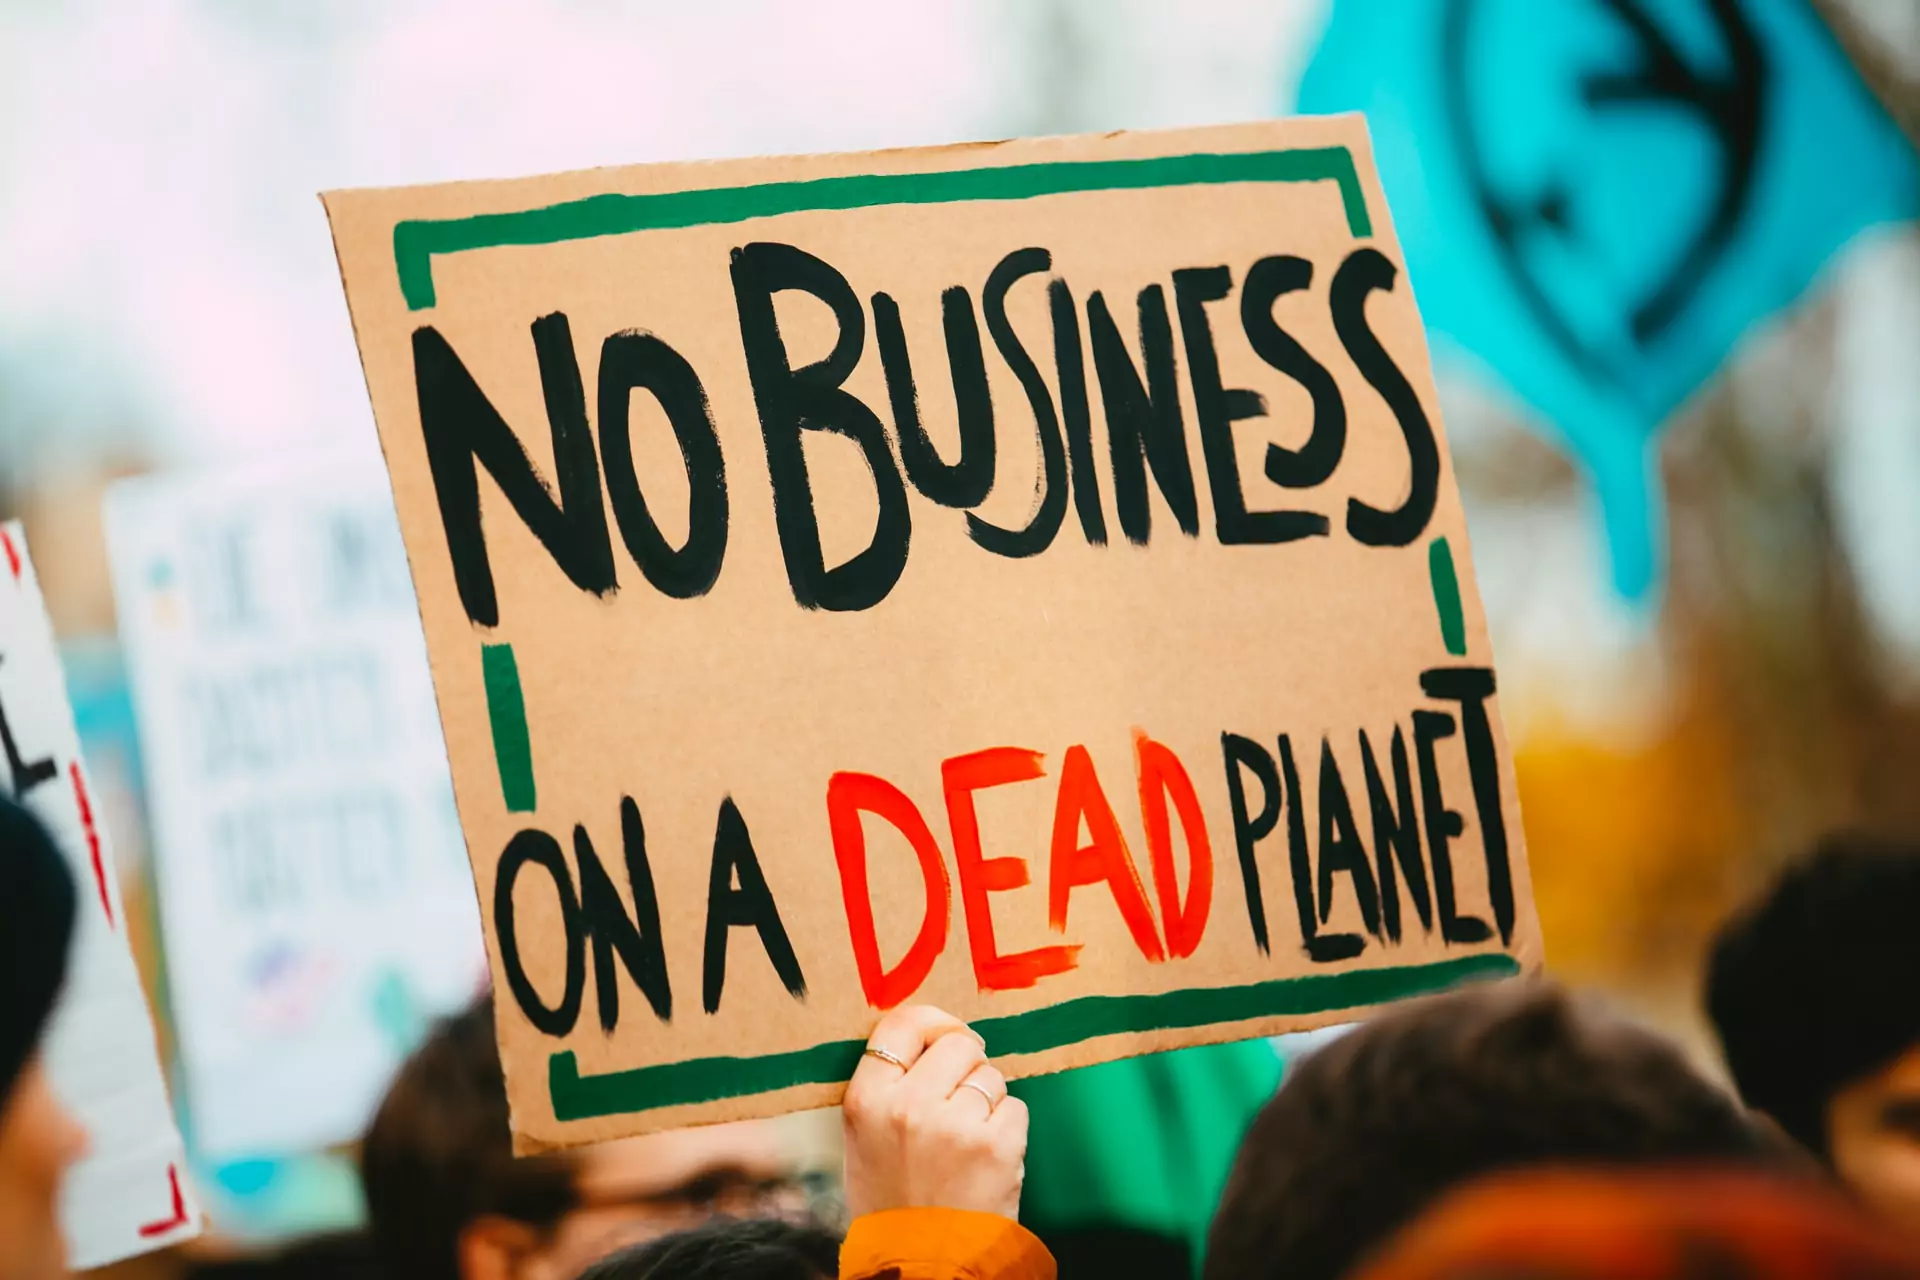 "No Business on a dead planet" transparent